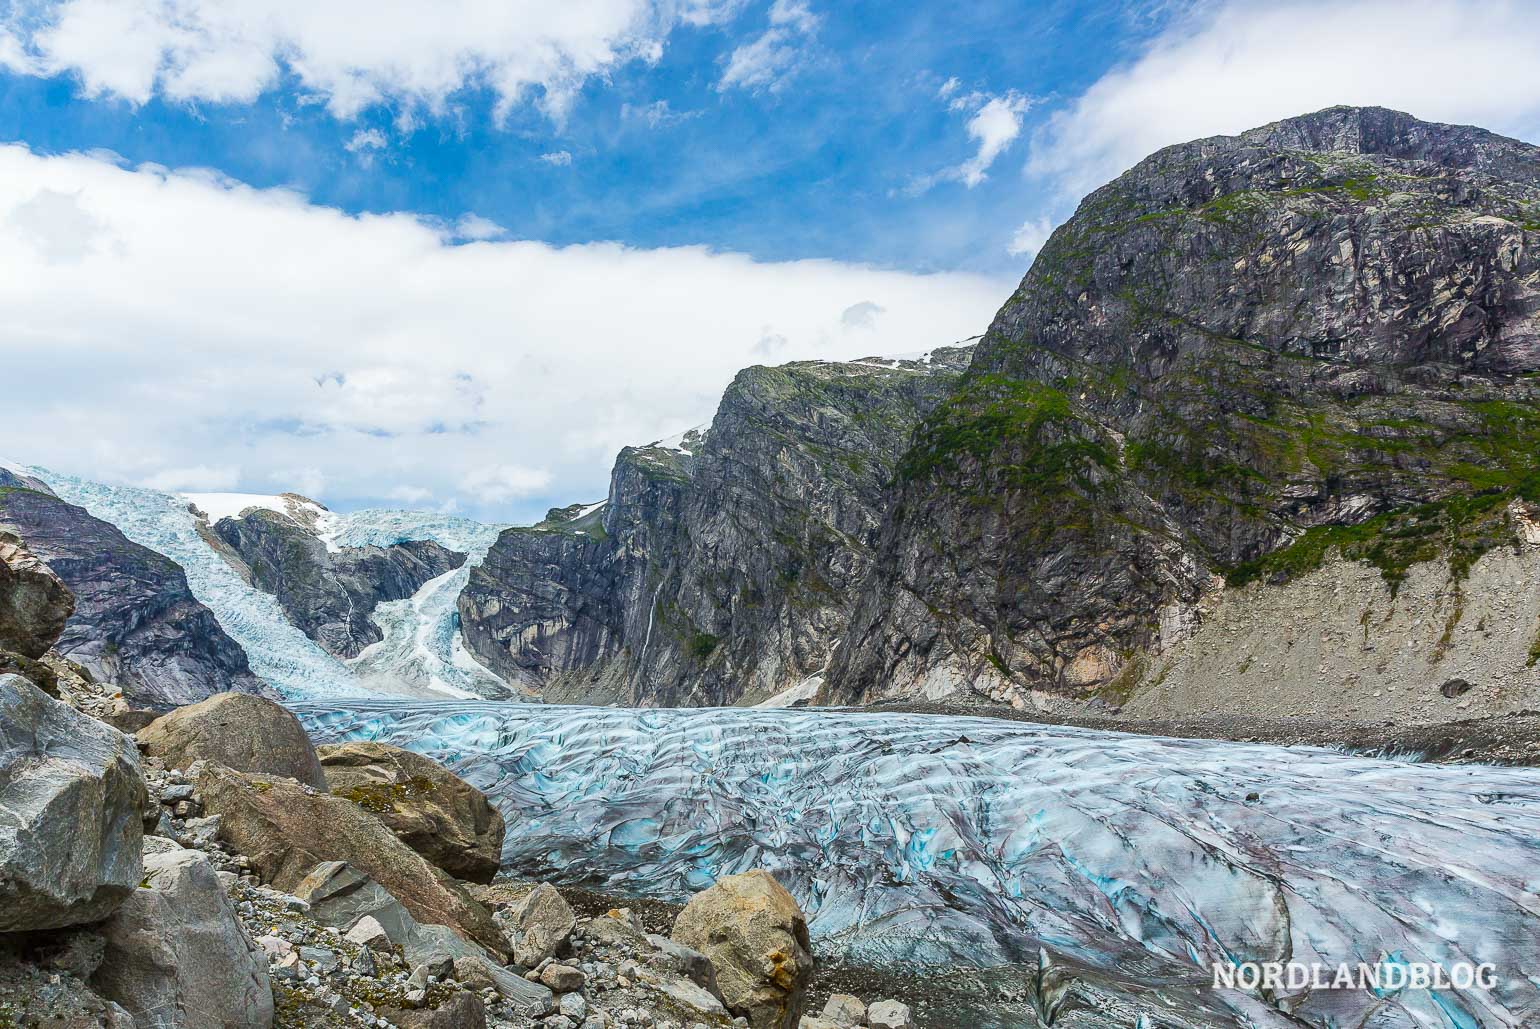 Wandern in Norwegen bedeutet auch eine Tour zu einem Gletscher, wie dem Austerdalsbreen zu gehen.